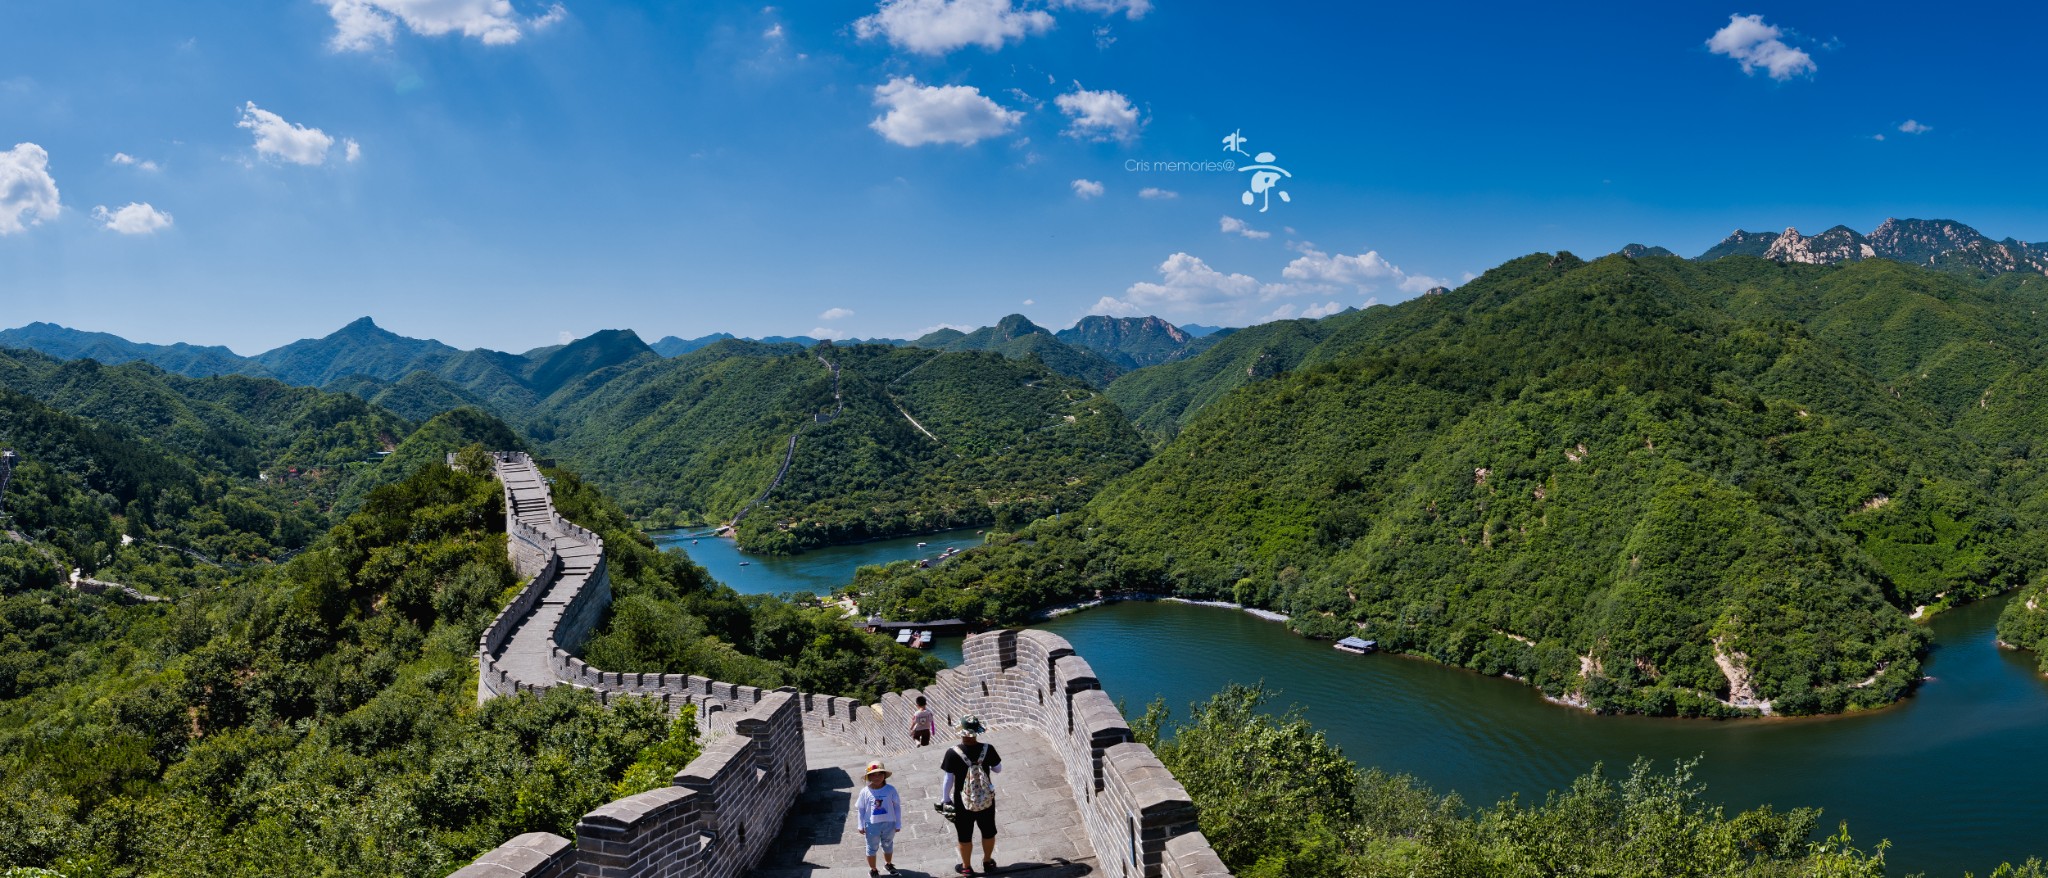 BeiJing Huanghuacheng Lakeside Great Wall